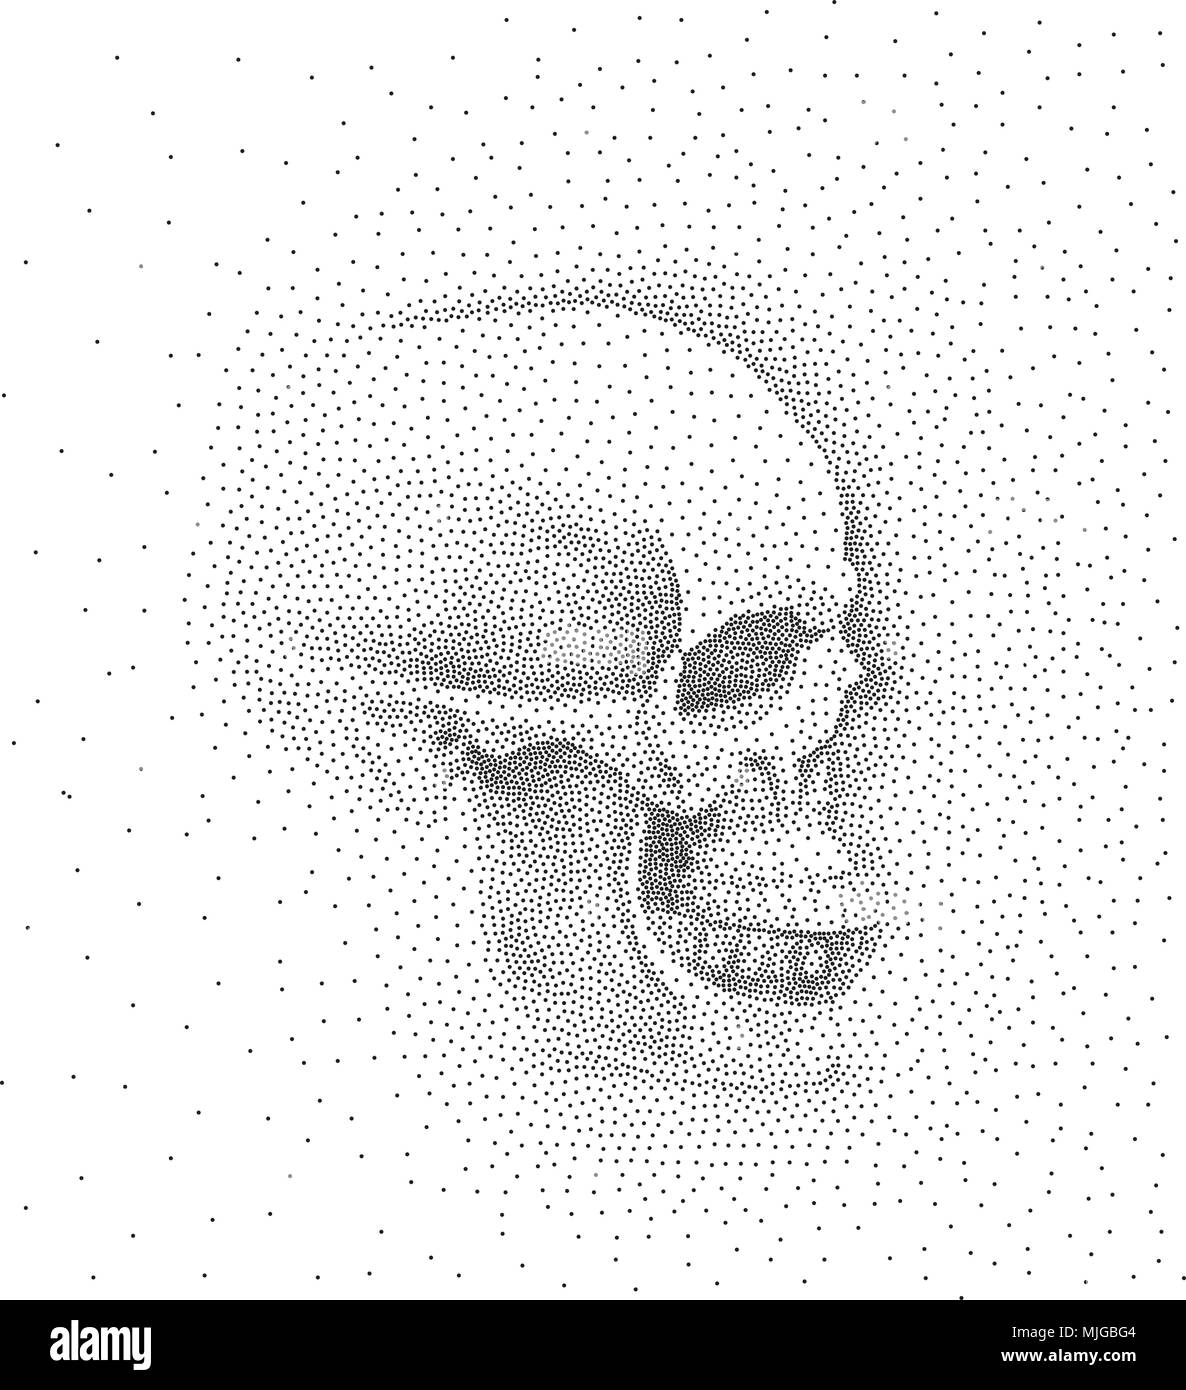 Schädel im Profil auf weißem Hintergrund. Einfache schwarze Punkte auf weißem Hintergrund. Digitale Pointillismus. Dot Bild Stock Vektor